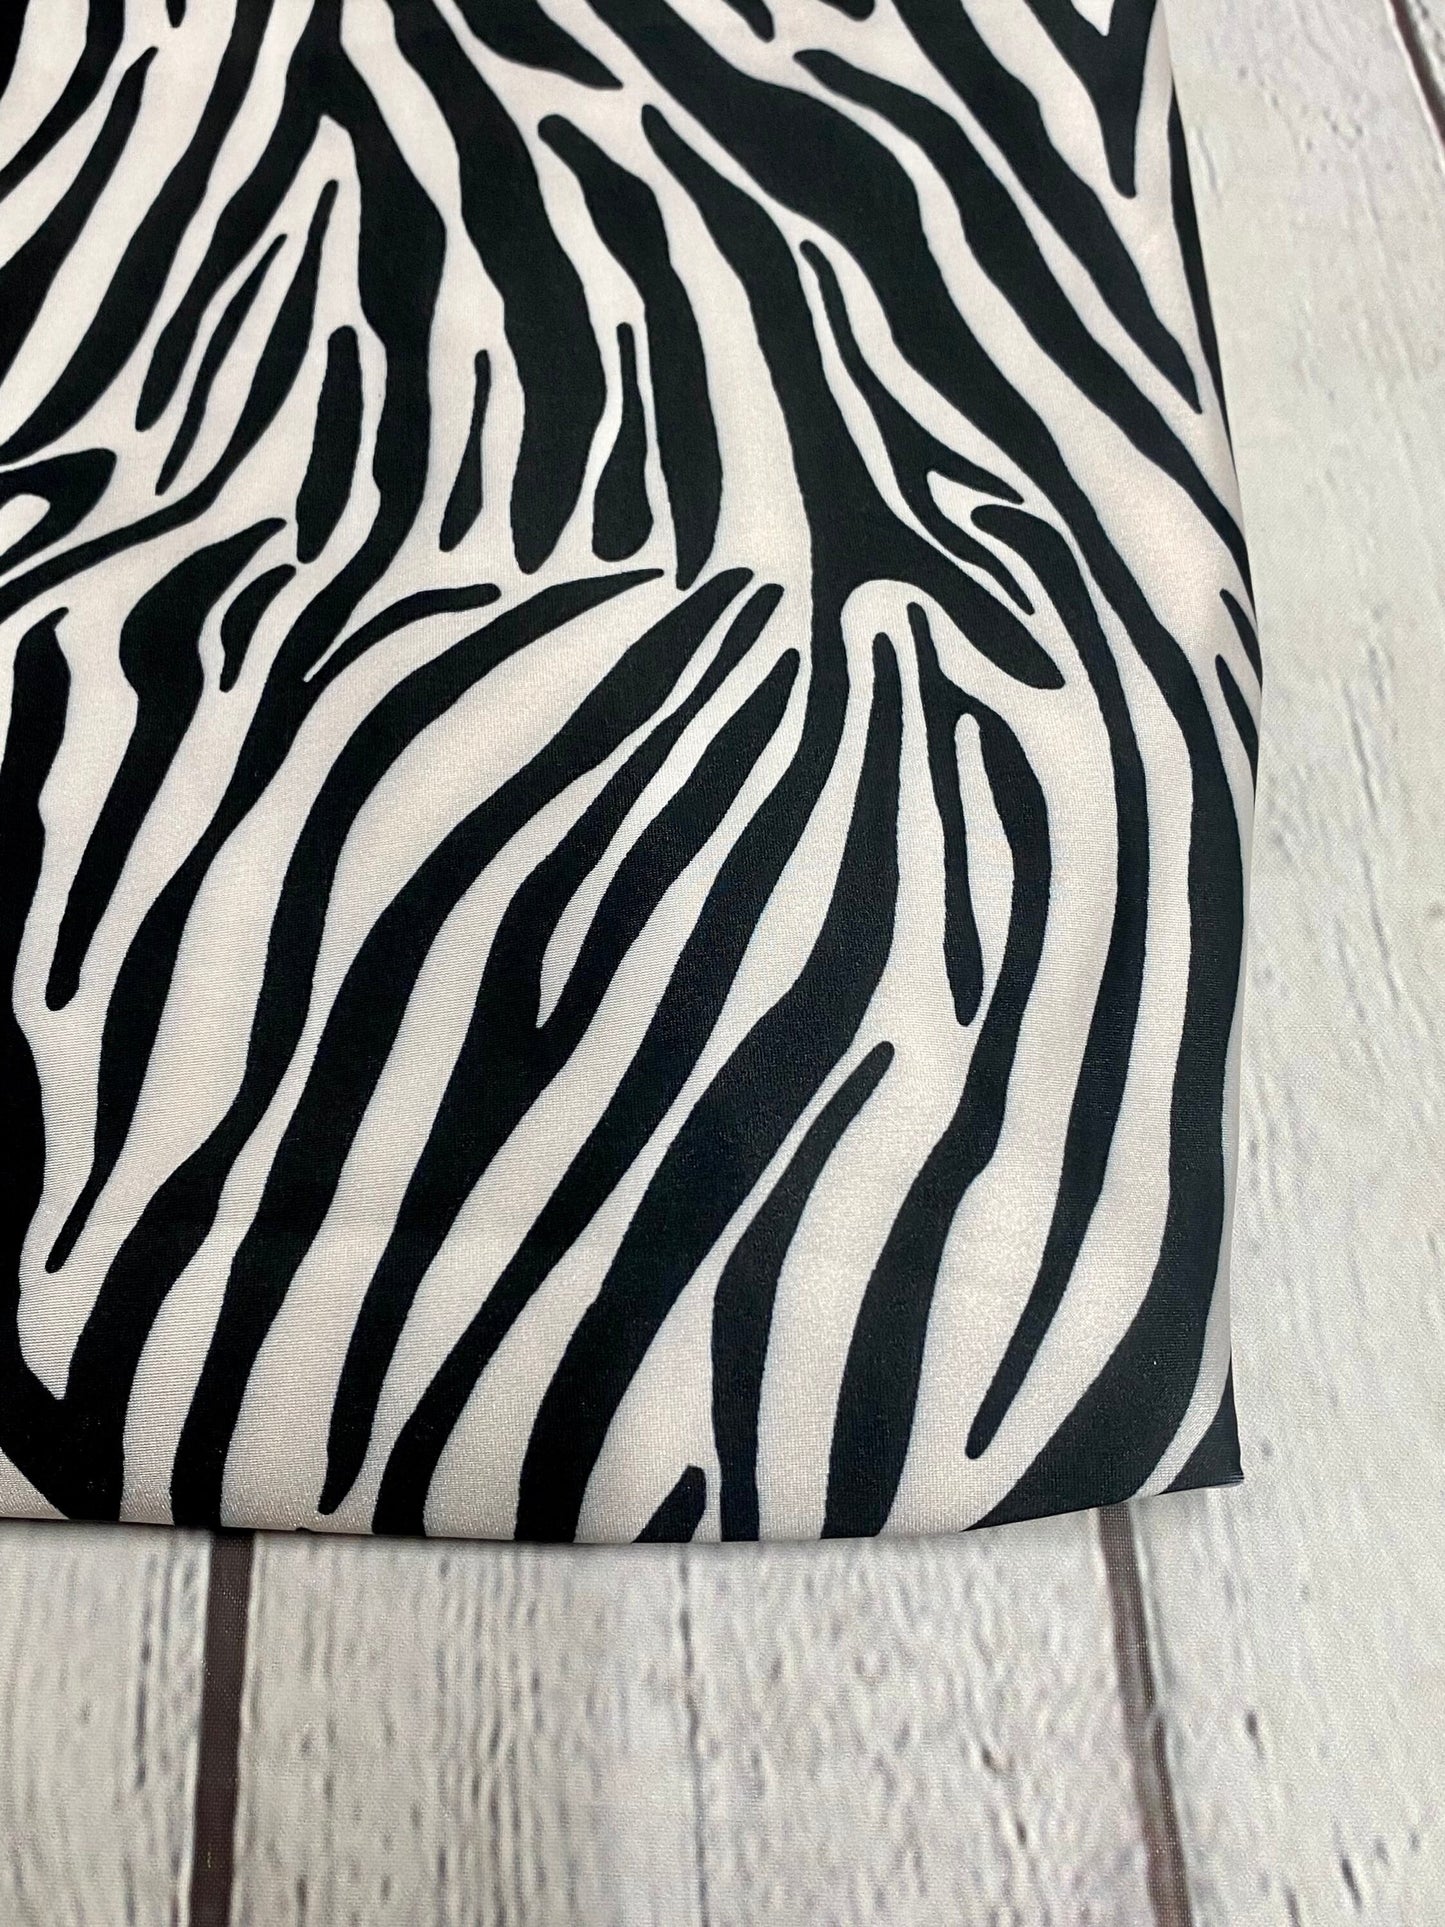 4 Way Stretch Print Nylon Spandex Fabric By The Yard Tricot Swim Wear Bikini Active Wear Black White  Zebra Animal  Print 280 GSM